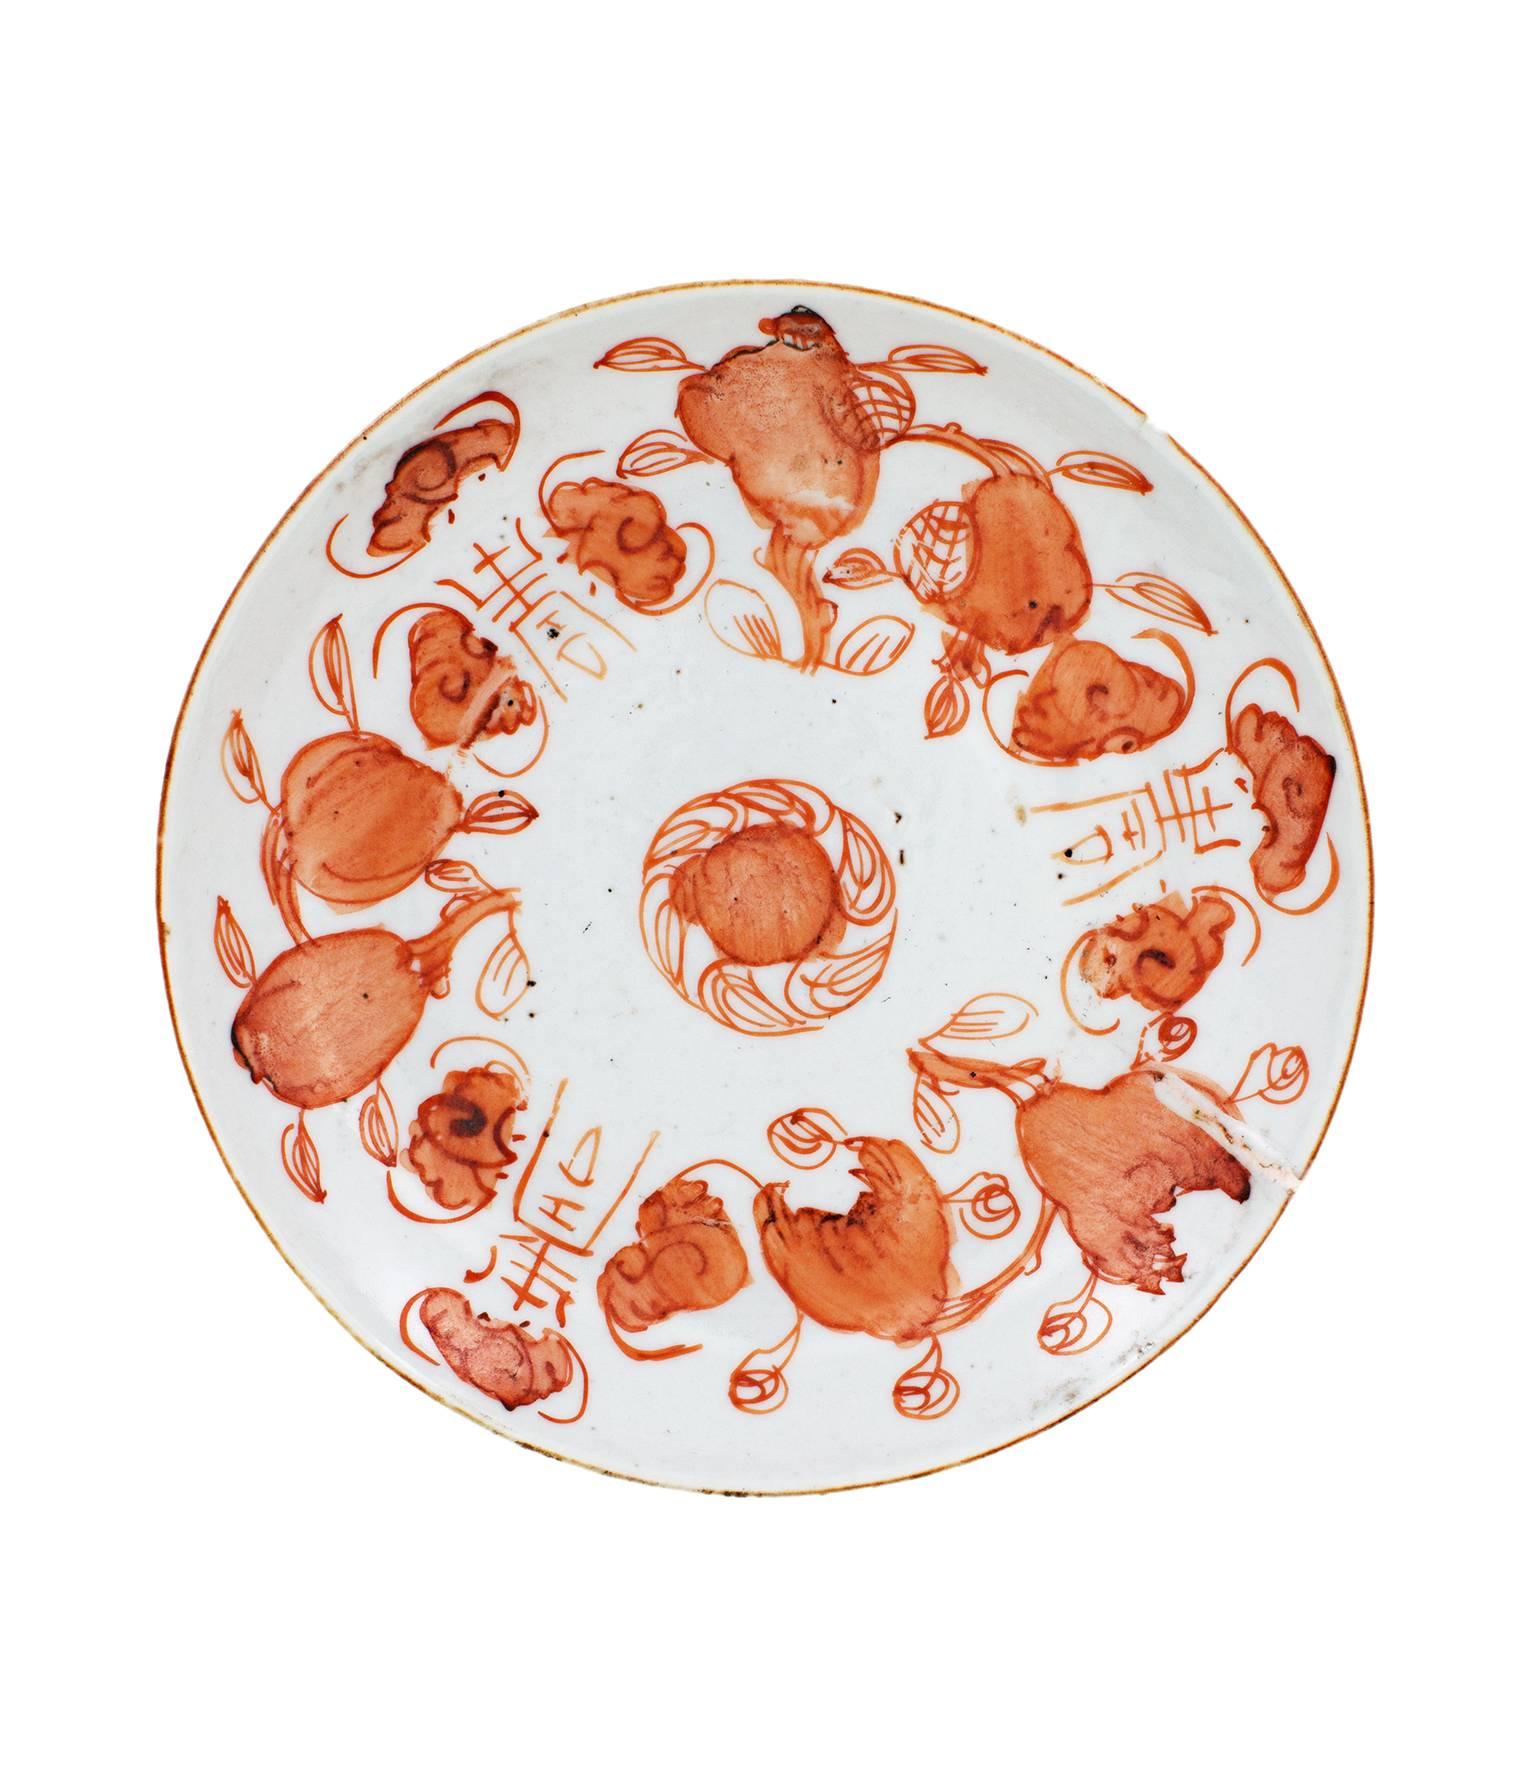 „“ Kleine Schale (Farbe Sepia), Keramik, hergestellt in China um 1860